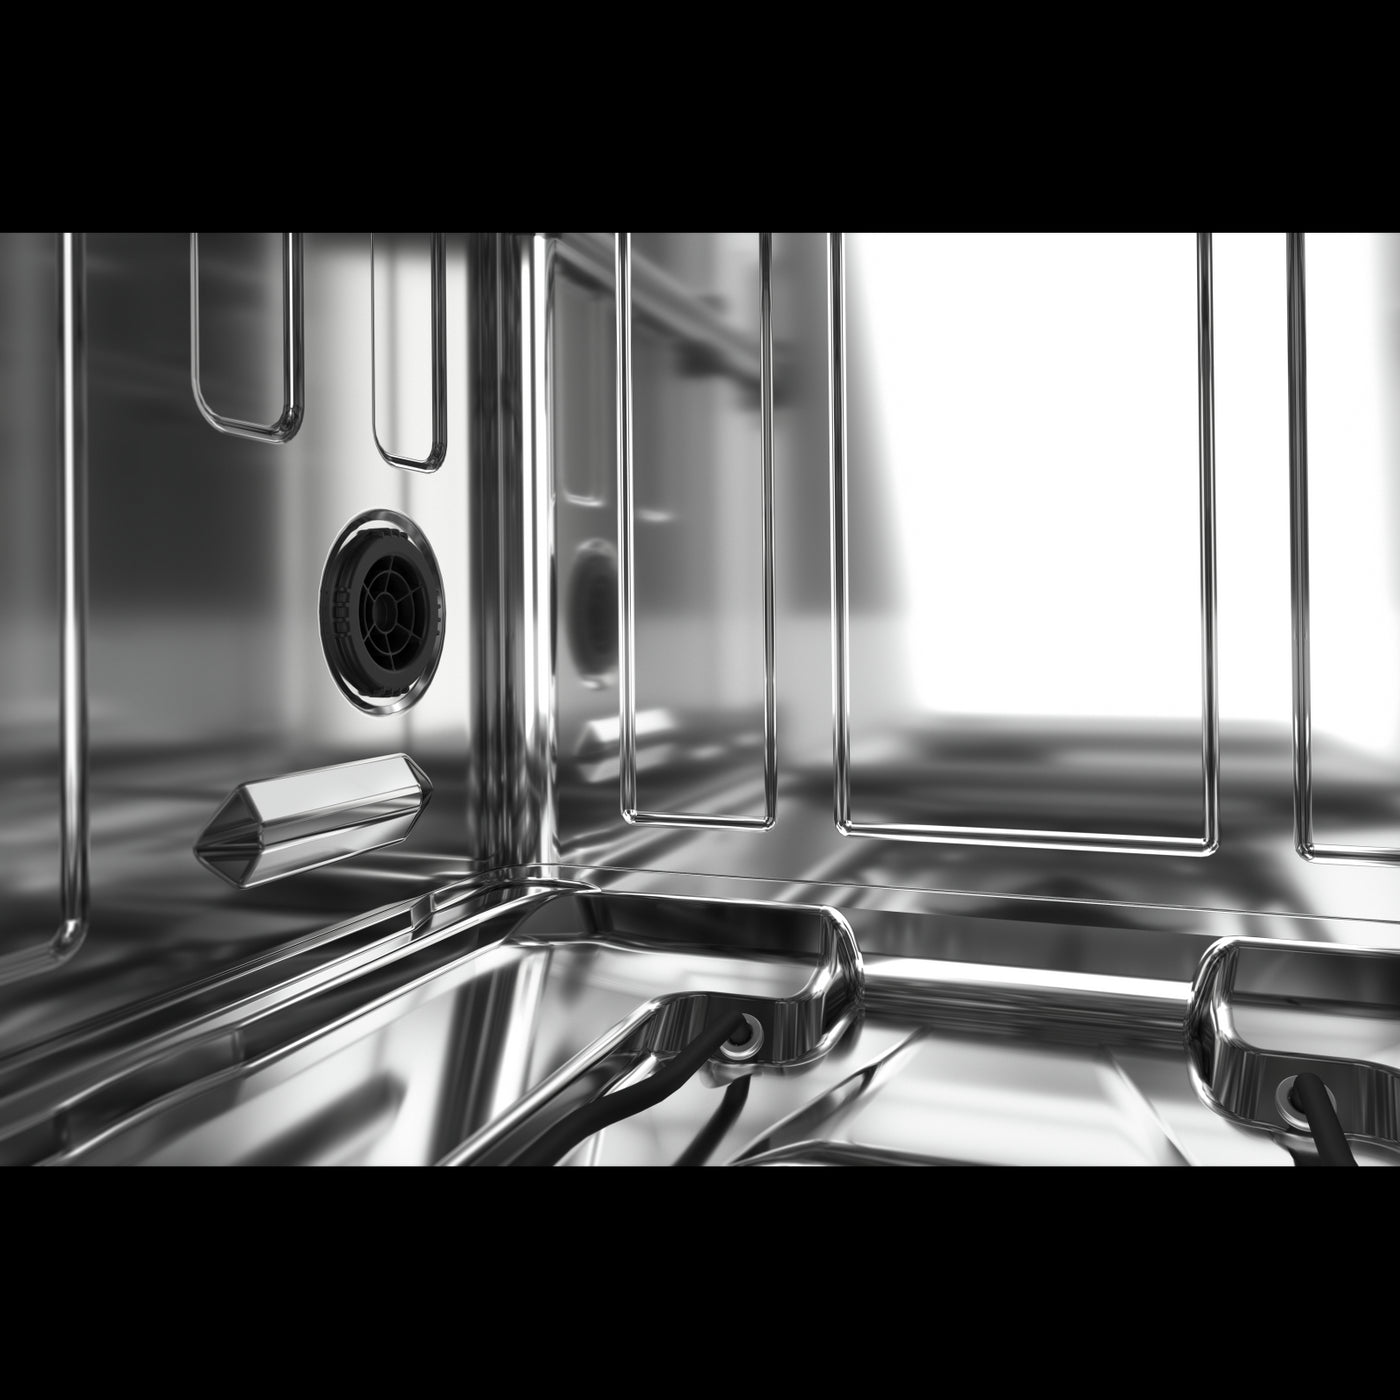 KitchenAid 24" White Dishwasher (39 dBA) - KDFE204KWH